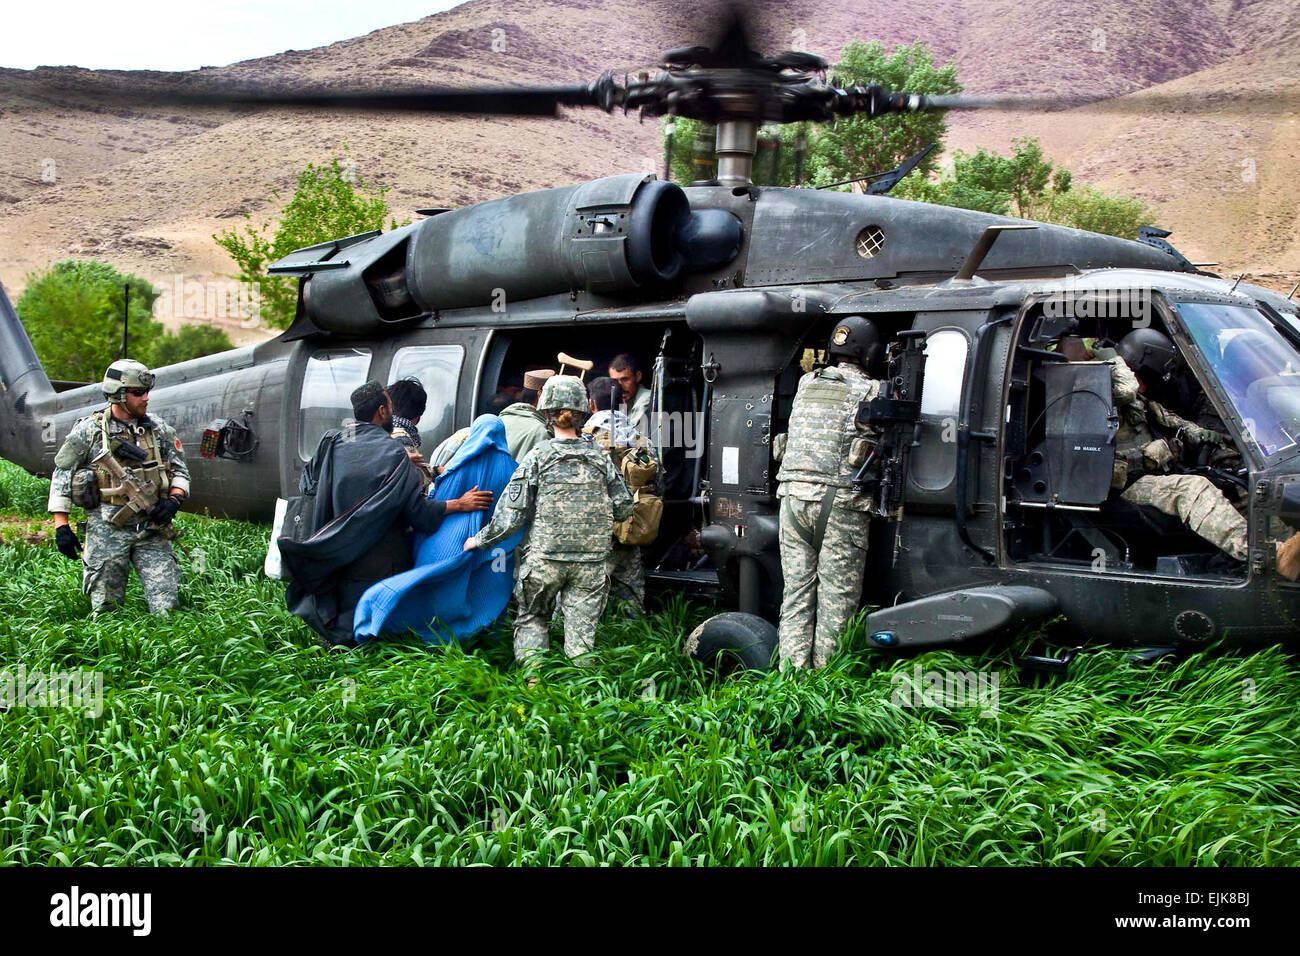 US-Armeesoldaten Hilfe verletzt afghanische Dorfbewohner auf einem UH-60 Black Hawk Hubschrauber während einer Operation zu Transport-Patienten in der Provinz Uruzgan, Afghanistan, 28. März 2010.  SPC. Nicholas T. Loyd Stockfoto